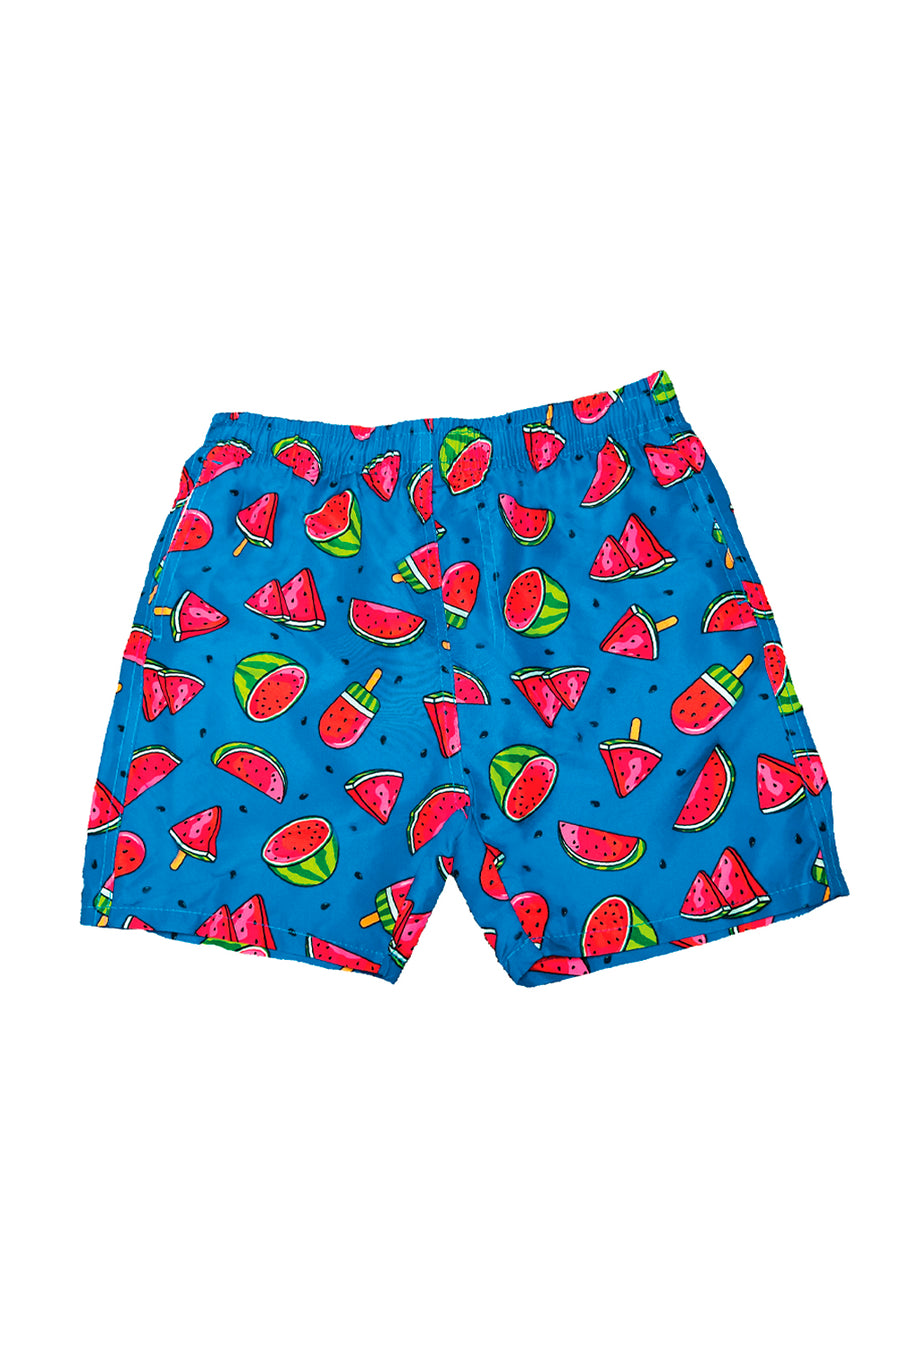 UZZI Kids Swim Shorts Fast Dry Fun Watermelon Print